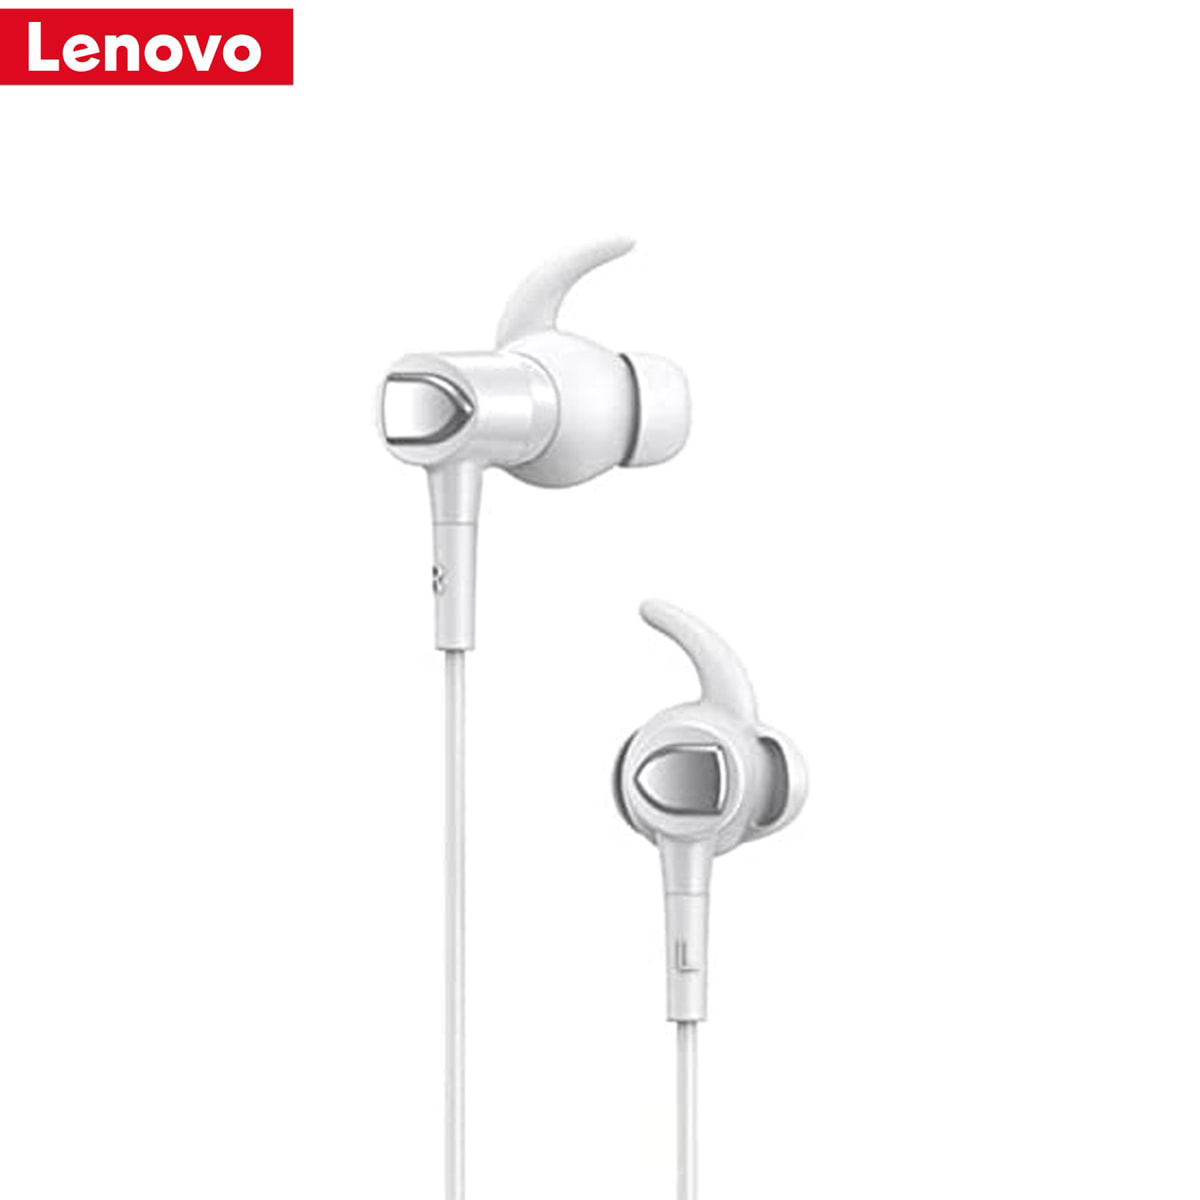 Audífonos Lenovo QF300 blanco